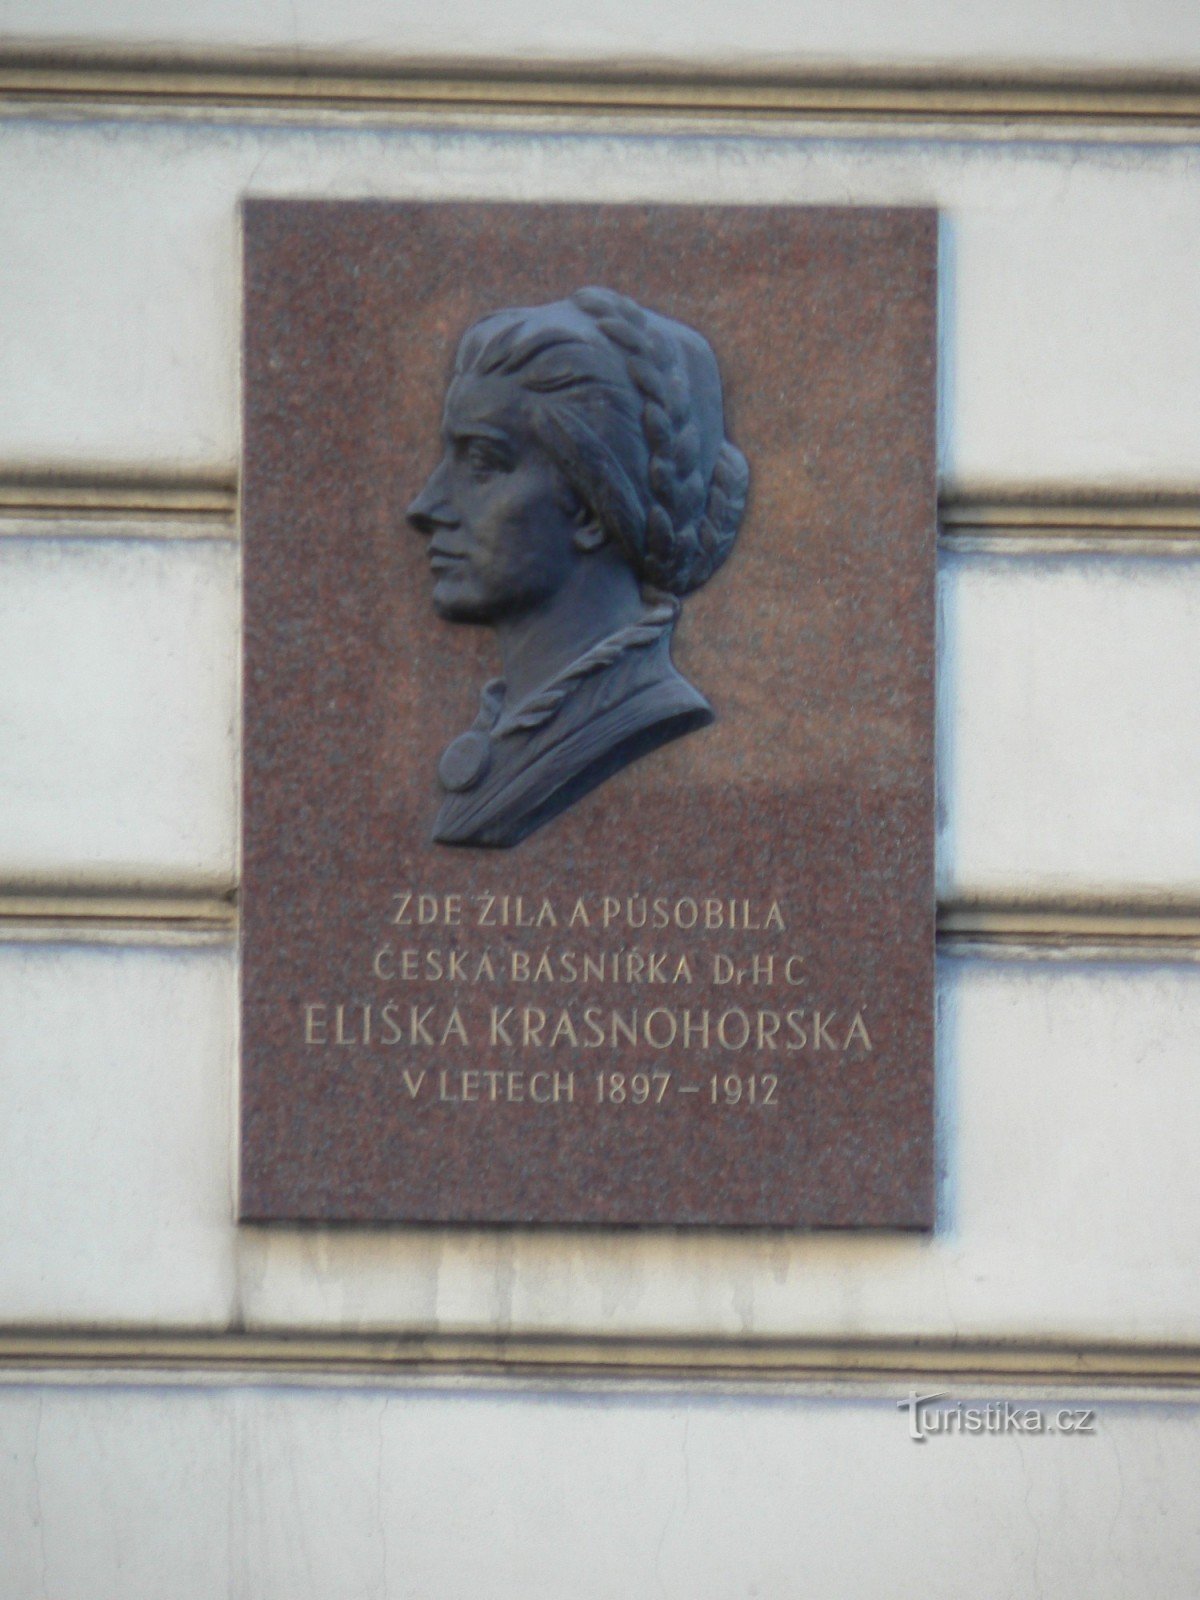 エリシュカ・クラスノホルスカの記念碑